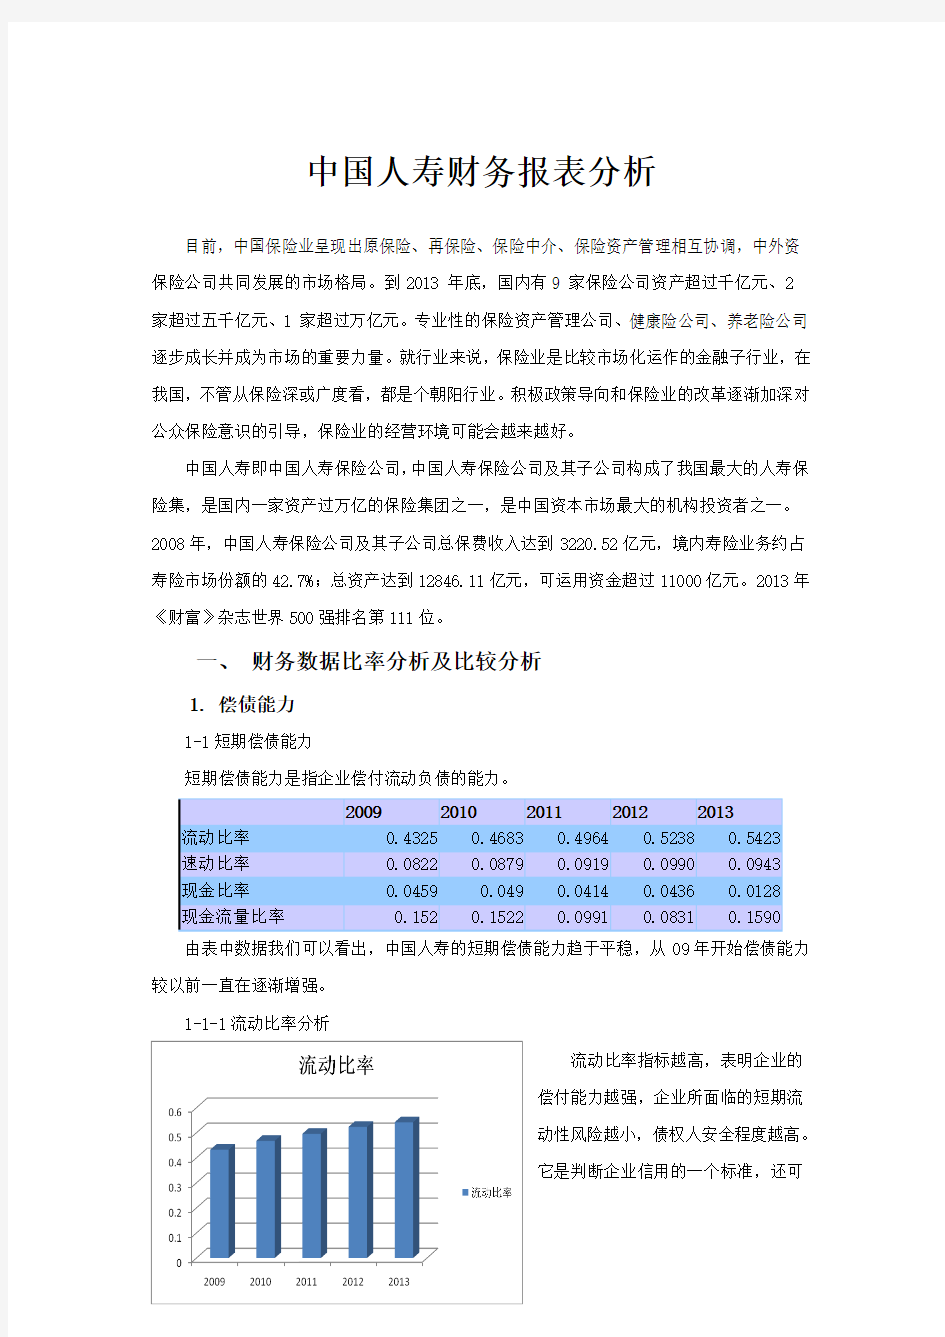 中国人寿-财务报表分析(09-13年)